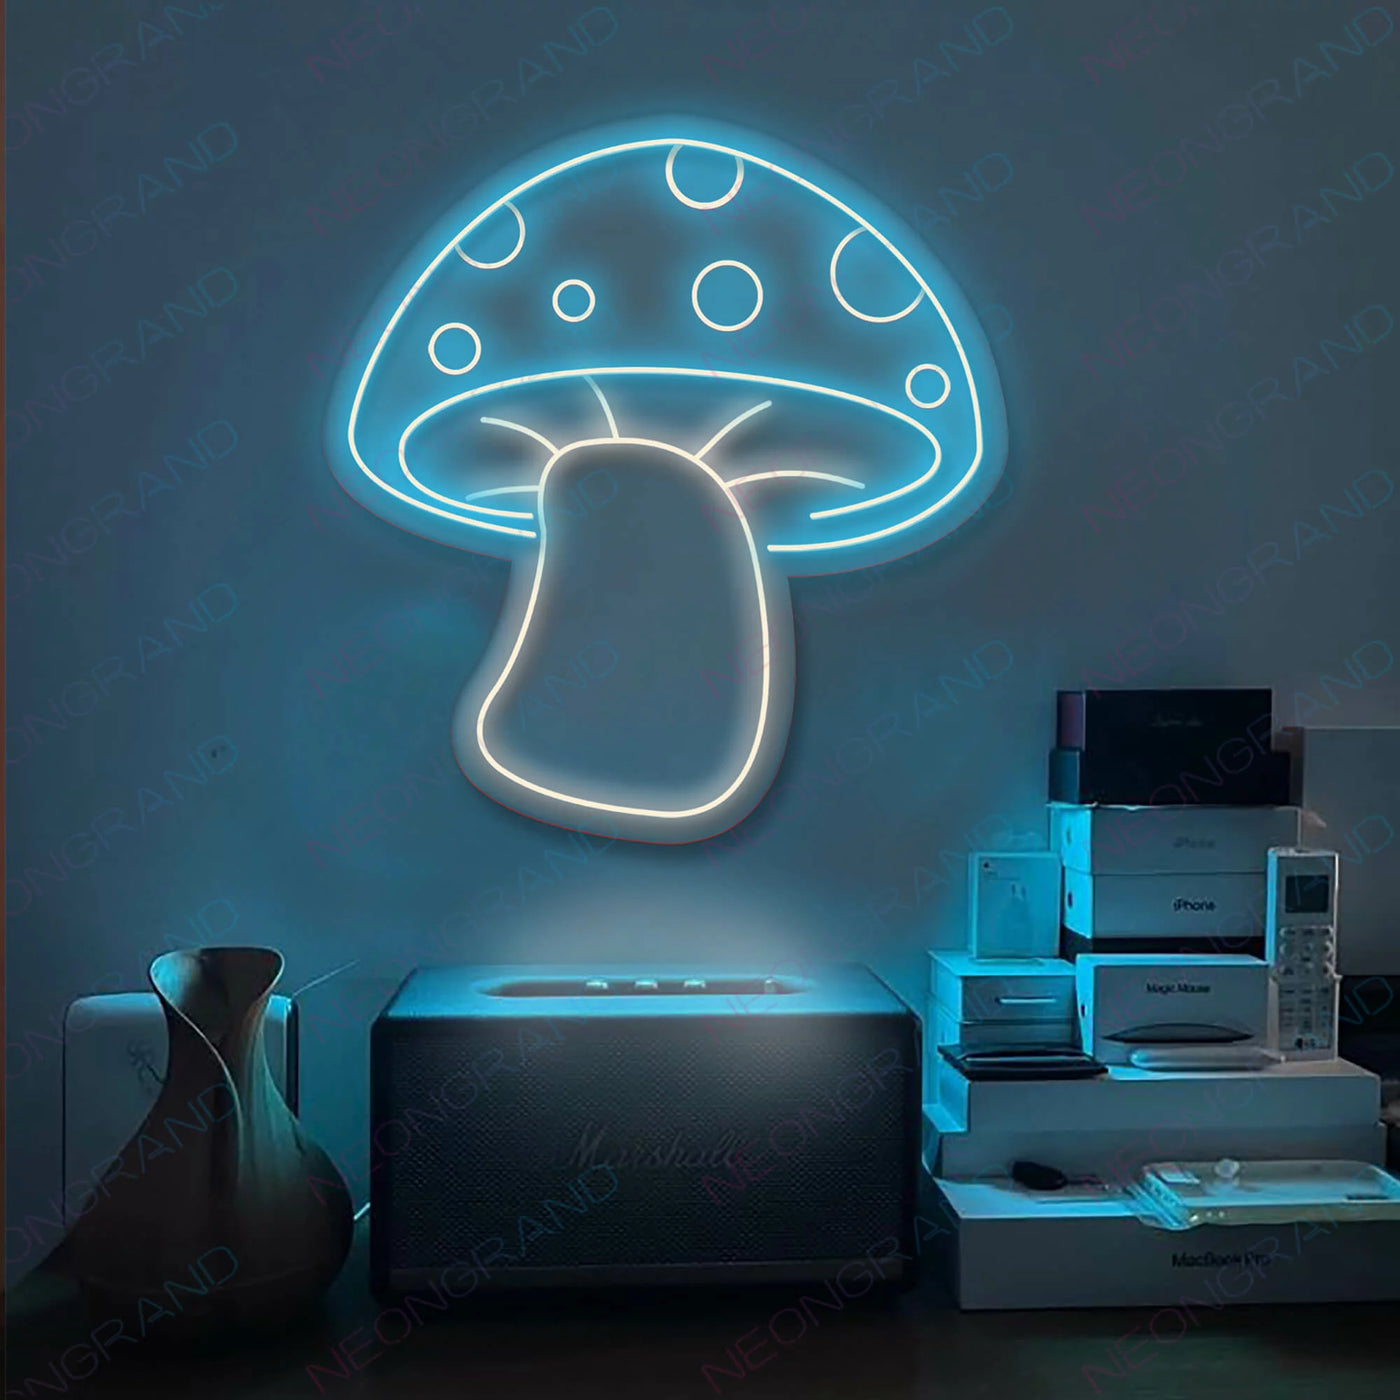 Aesthetic Mushroom Neon Sign Led Sign Light Blue